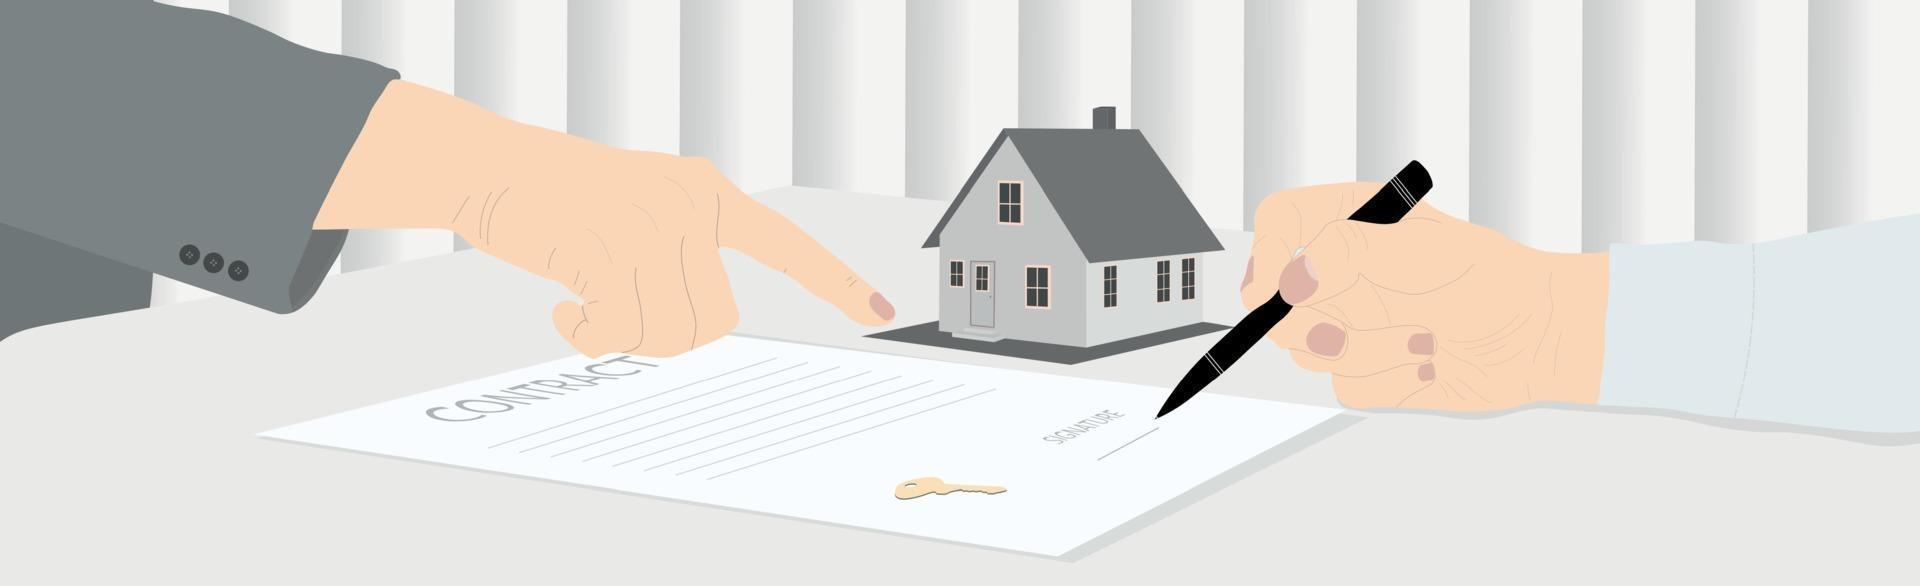 het ondertekenen van een koopovereenkomst voor het huis, het ontvangen van sleutels - vector